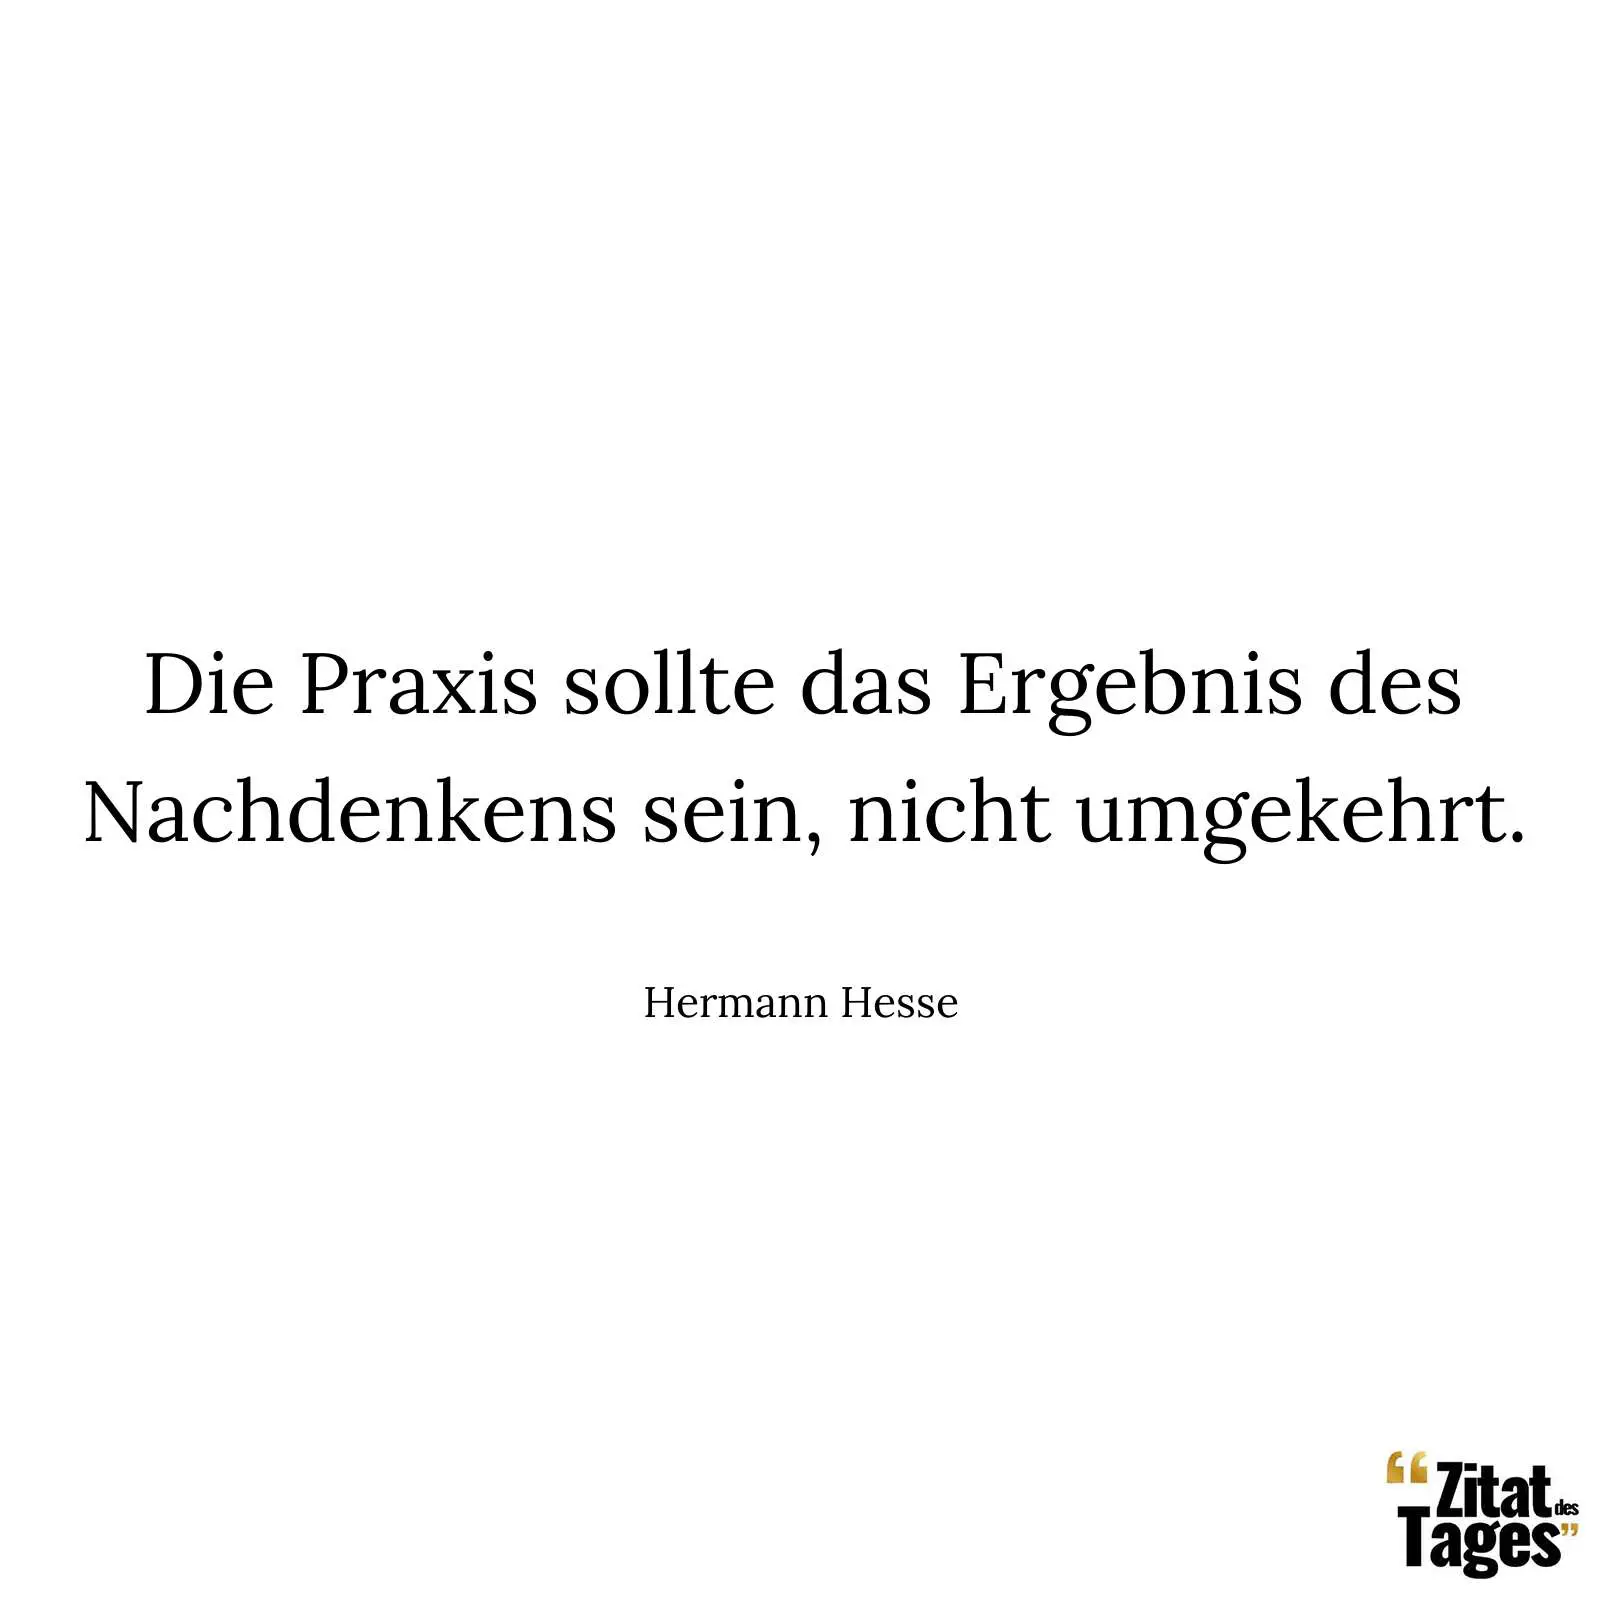 Die Praxis sollte das Ergebnis des Nachdenkens sein, nicht umgekehrt. - Hermann Hesse